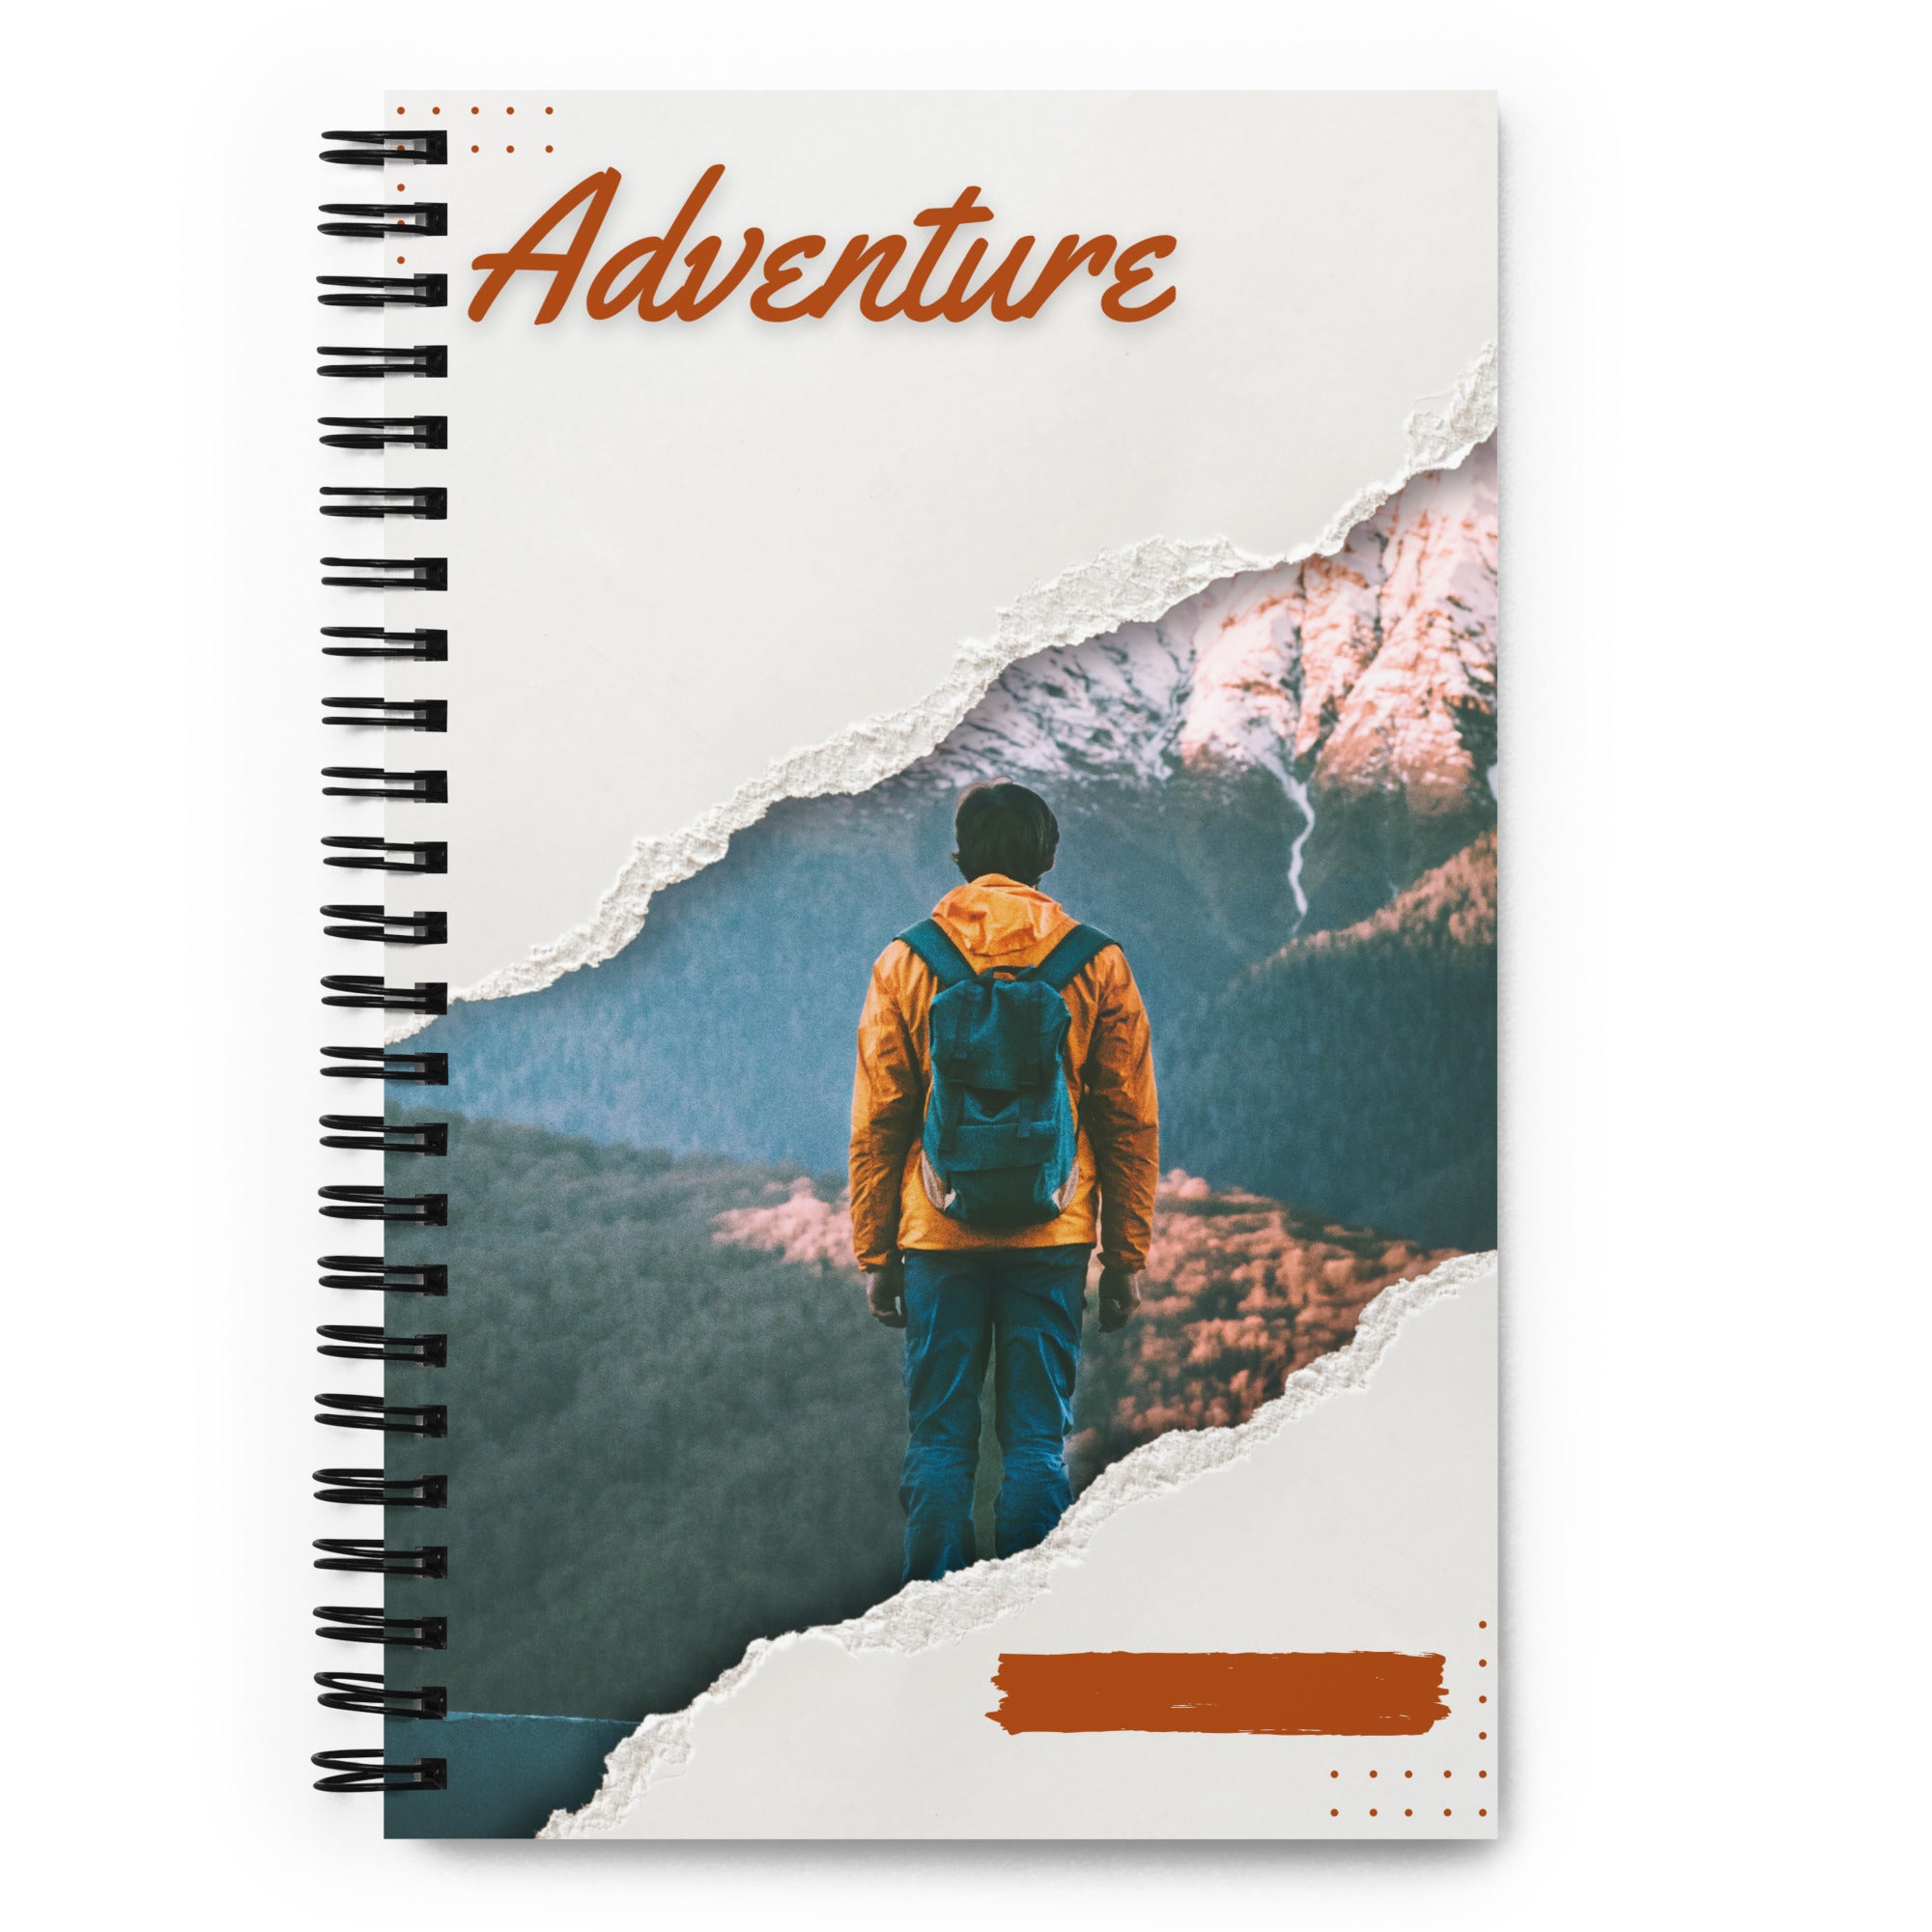 Adventure - Spiral notebook